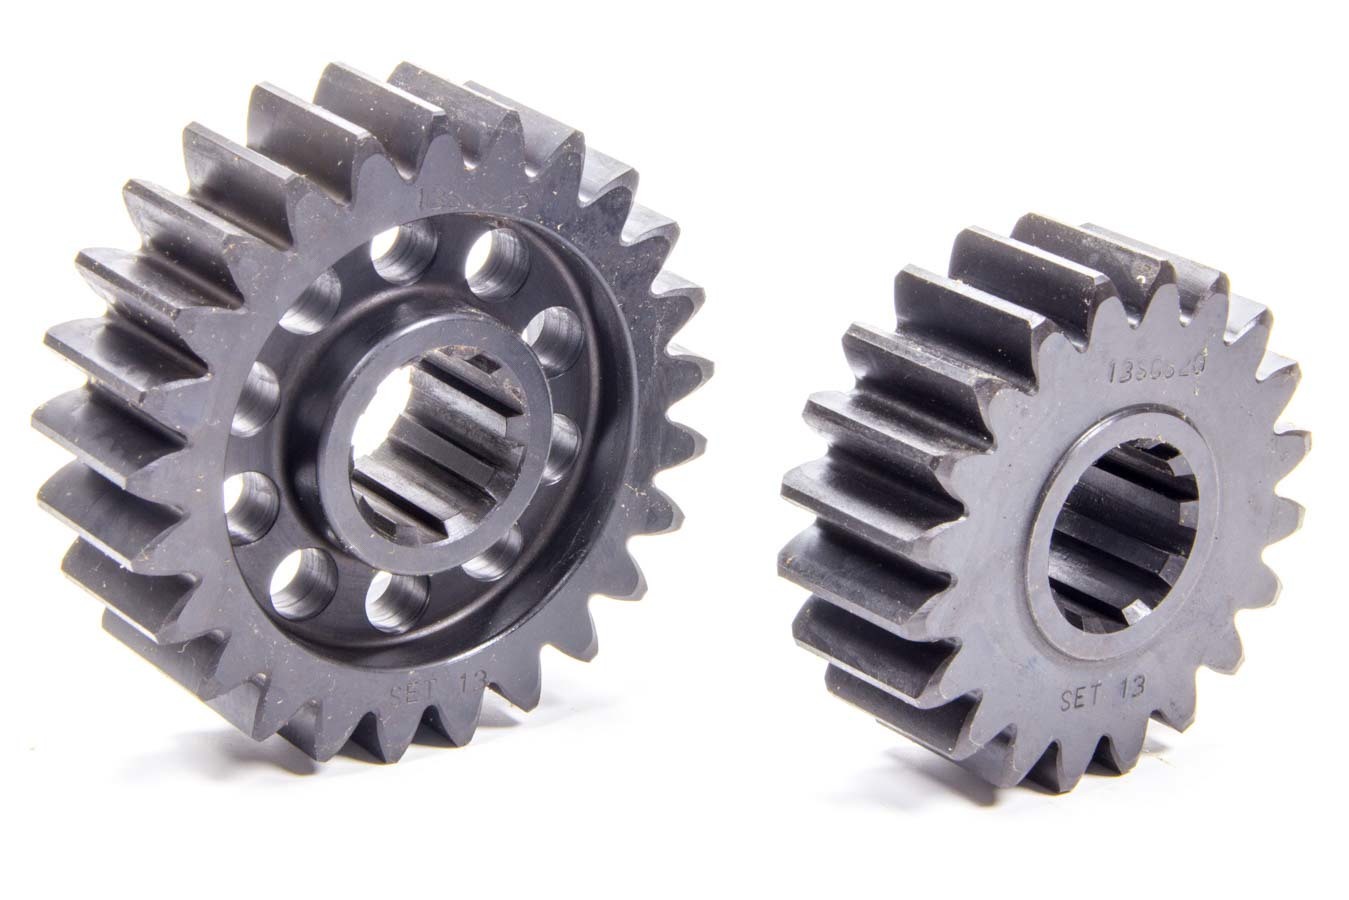 SCS Gears 13 Quick Change Gear Set, Professional, Set 13, 10 Spline, 4.11 Ratio 5.14 / 3.29, 4.86 Ratio 6.08 / 3.89, Steel, Each